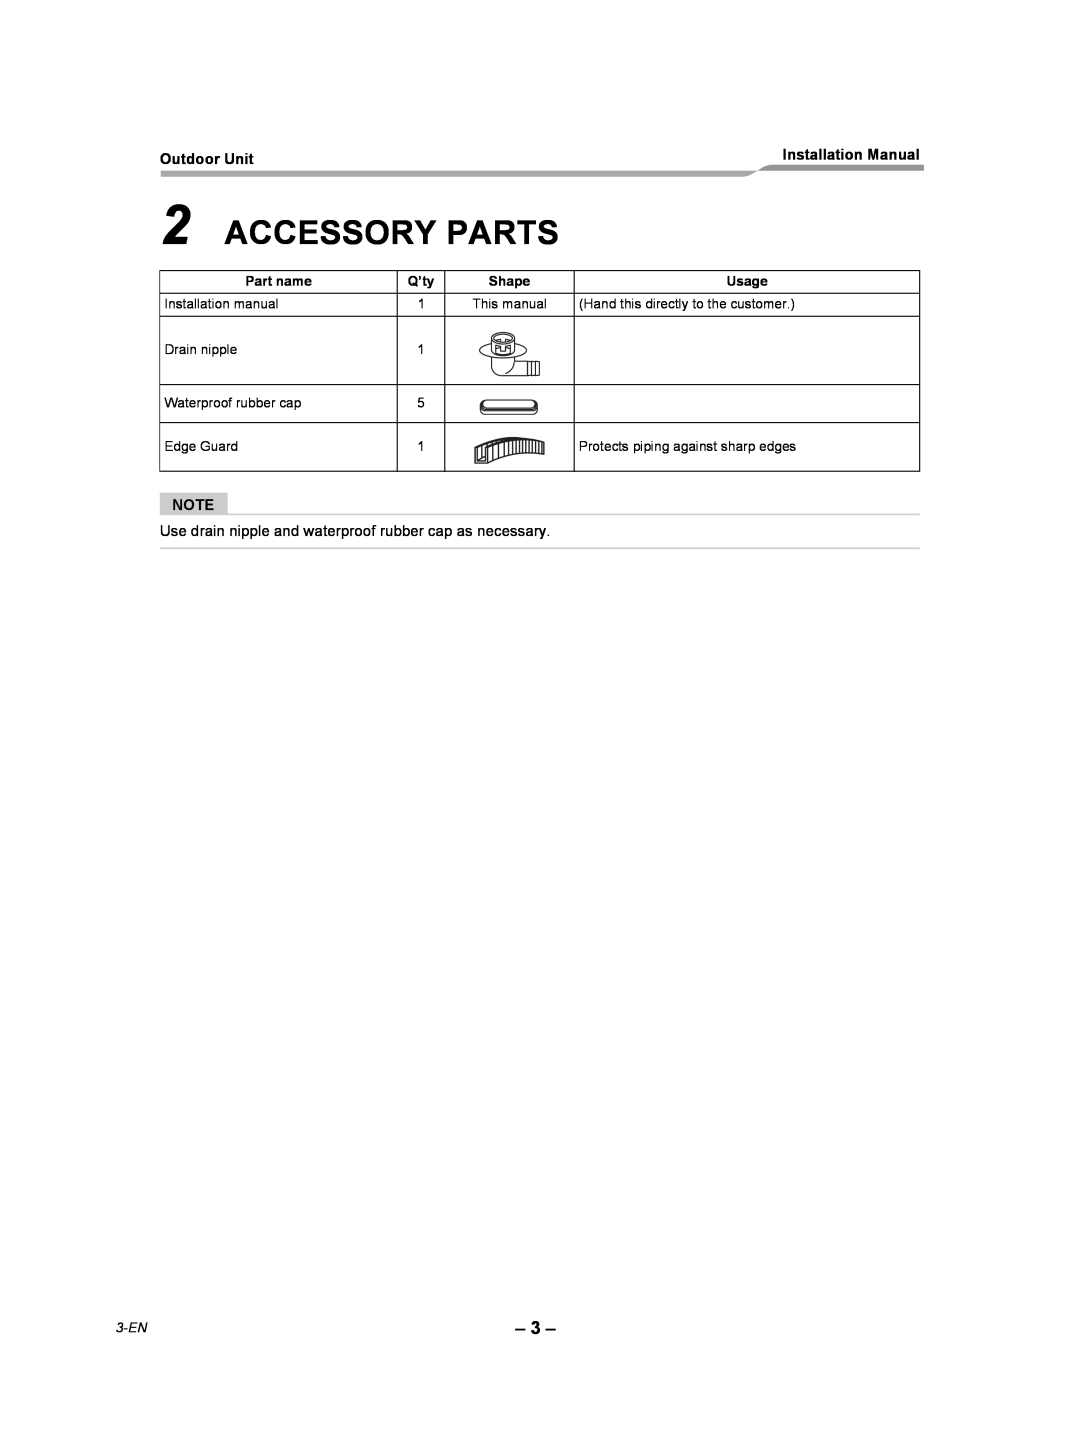 Toshiba RAV-SP240AT2-UL installation manual Accessory Parts, 3-EN 